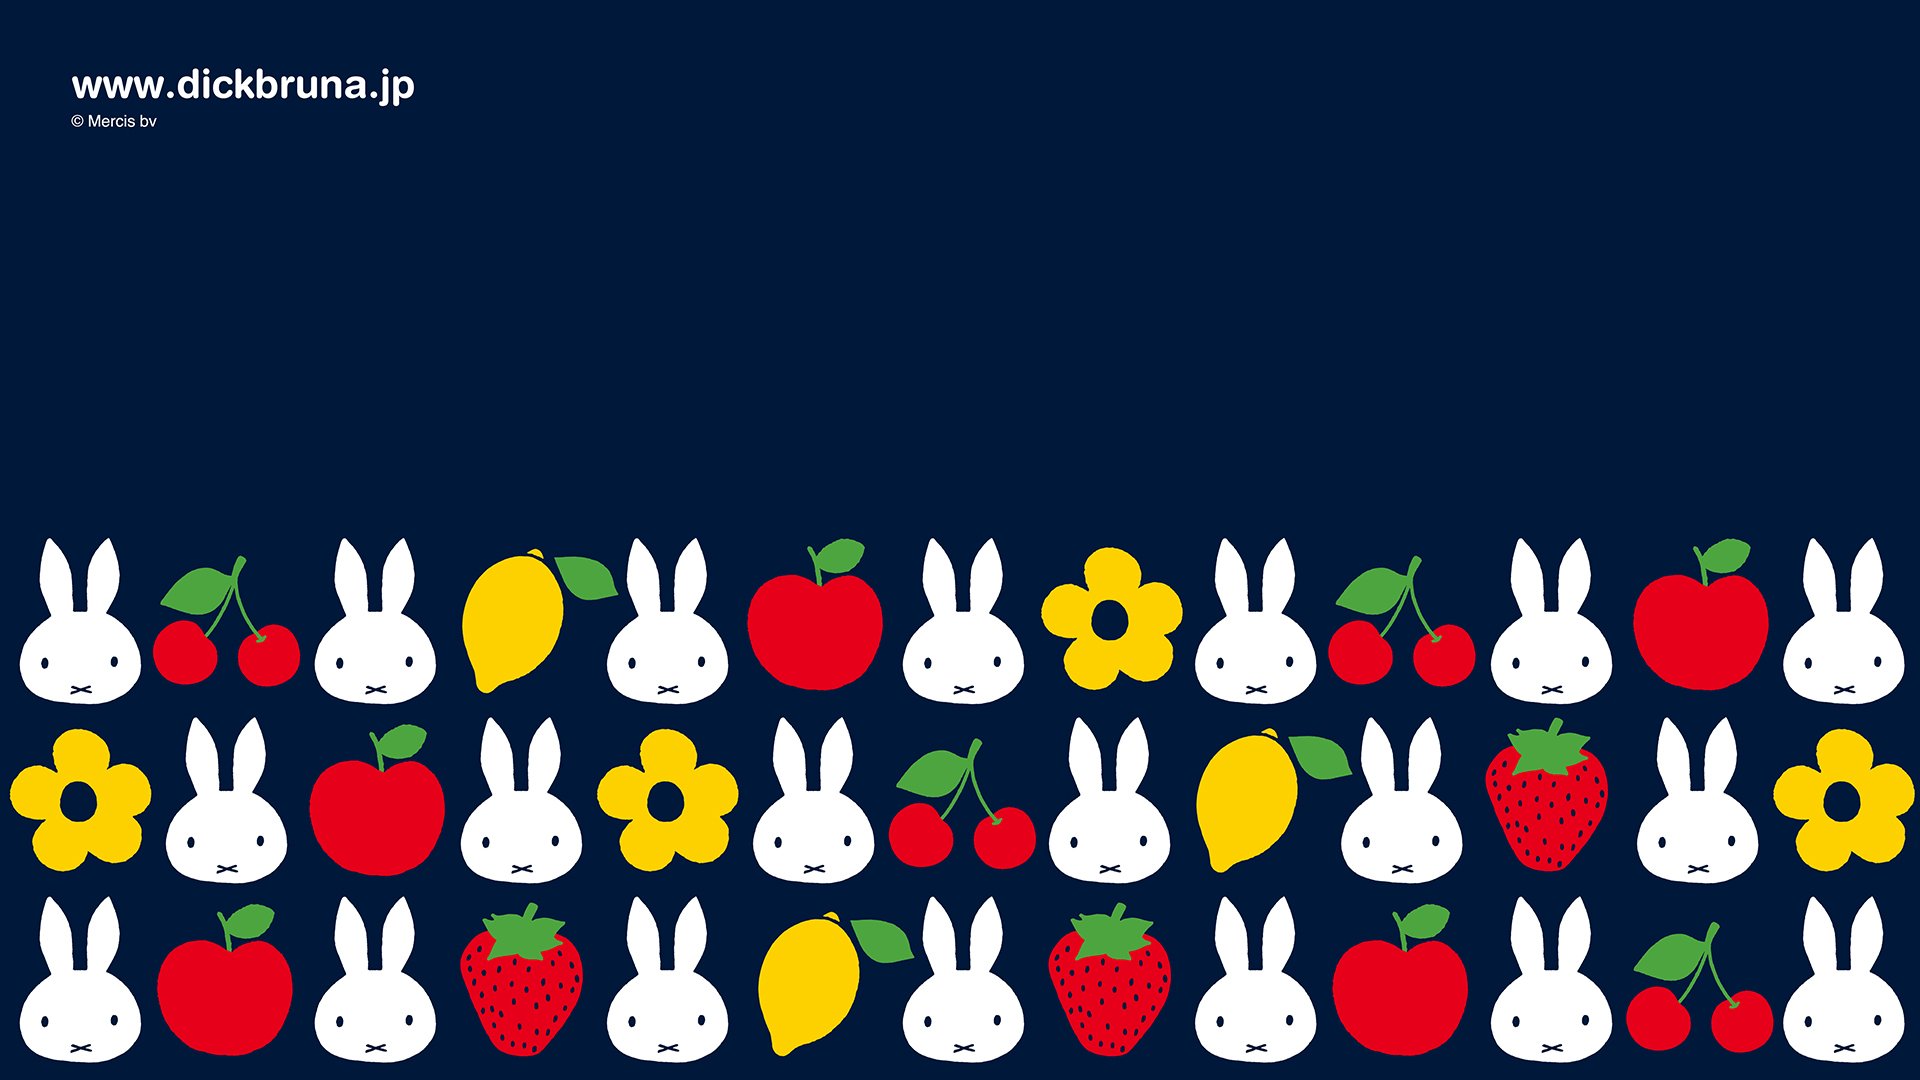 日本のミッフィー情報サイト Ar Twitter この秋の新シリーズ オータムフルーツ デザインのpc用 スマホ用壁紙をプレゼントしております ぜひダウンロードしてお使いくださいね 詳しくはこちらから T Co Bsbtbblbht